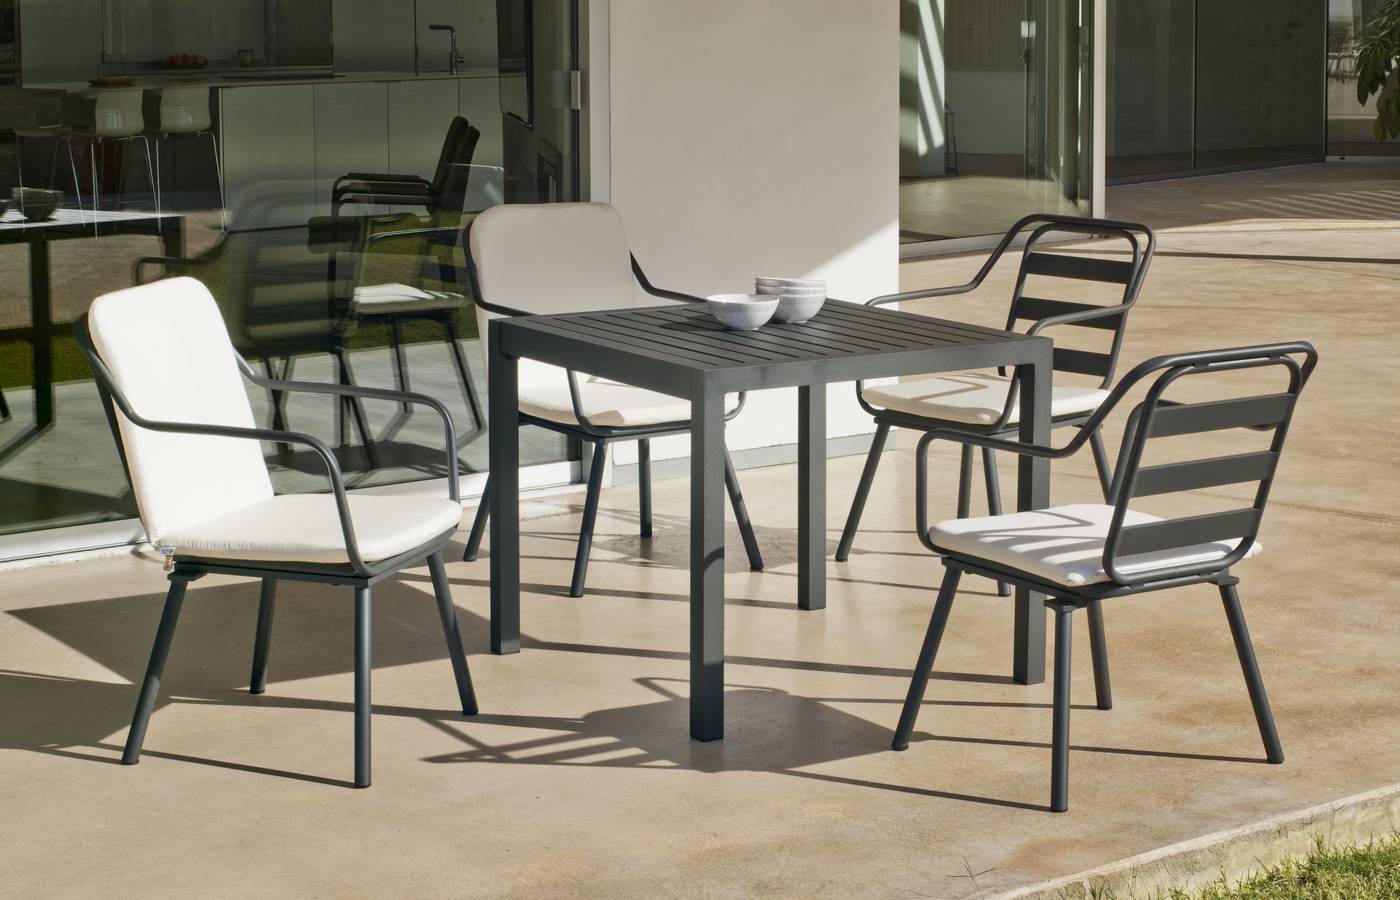 Conjunto aluminio luxe: mesa cuadrada de 90 cm. + 4 sillones. Disponible en color blanco y color antracita.